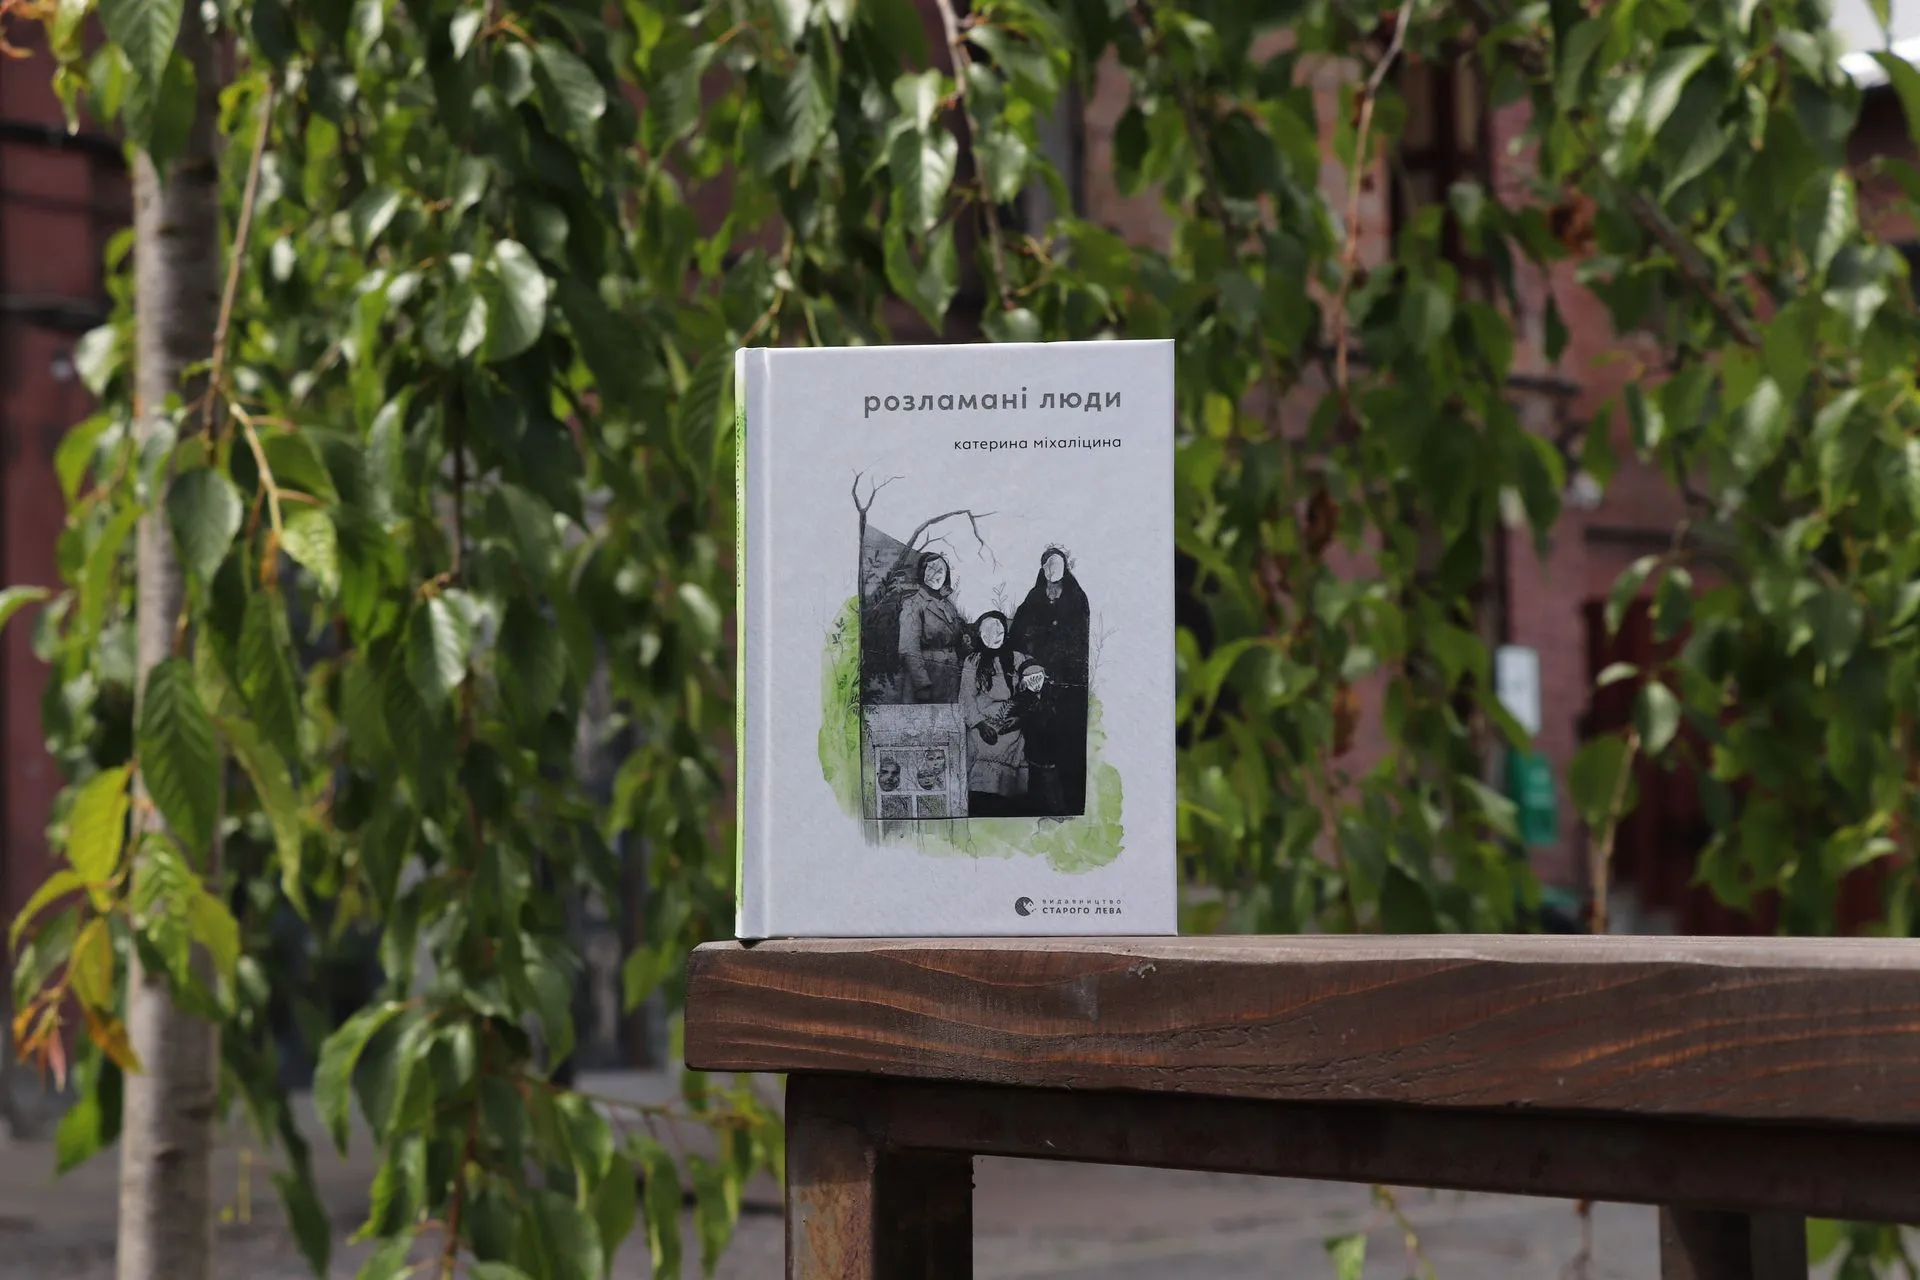 «Розламані люди» — у Катерини Міхаліциної вийшла збірка віршів про історії людей, місць та подій